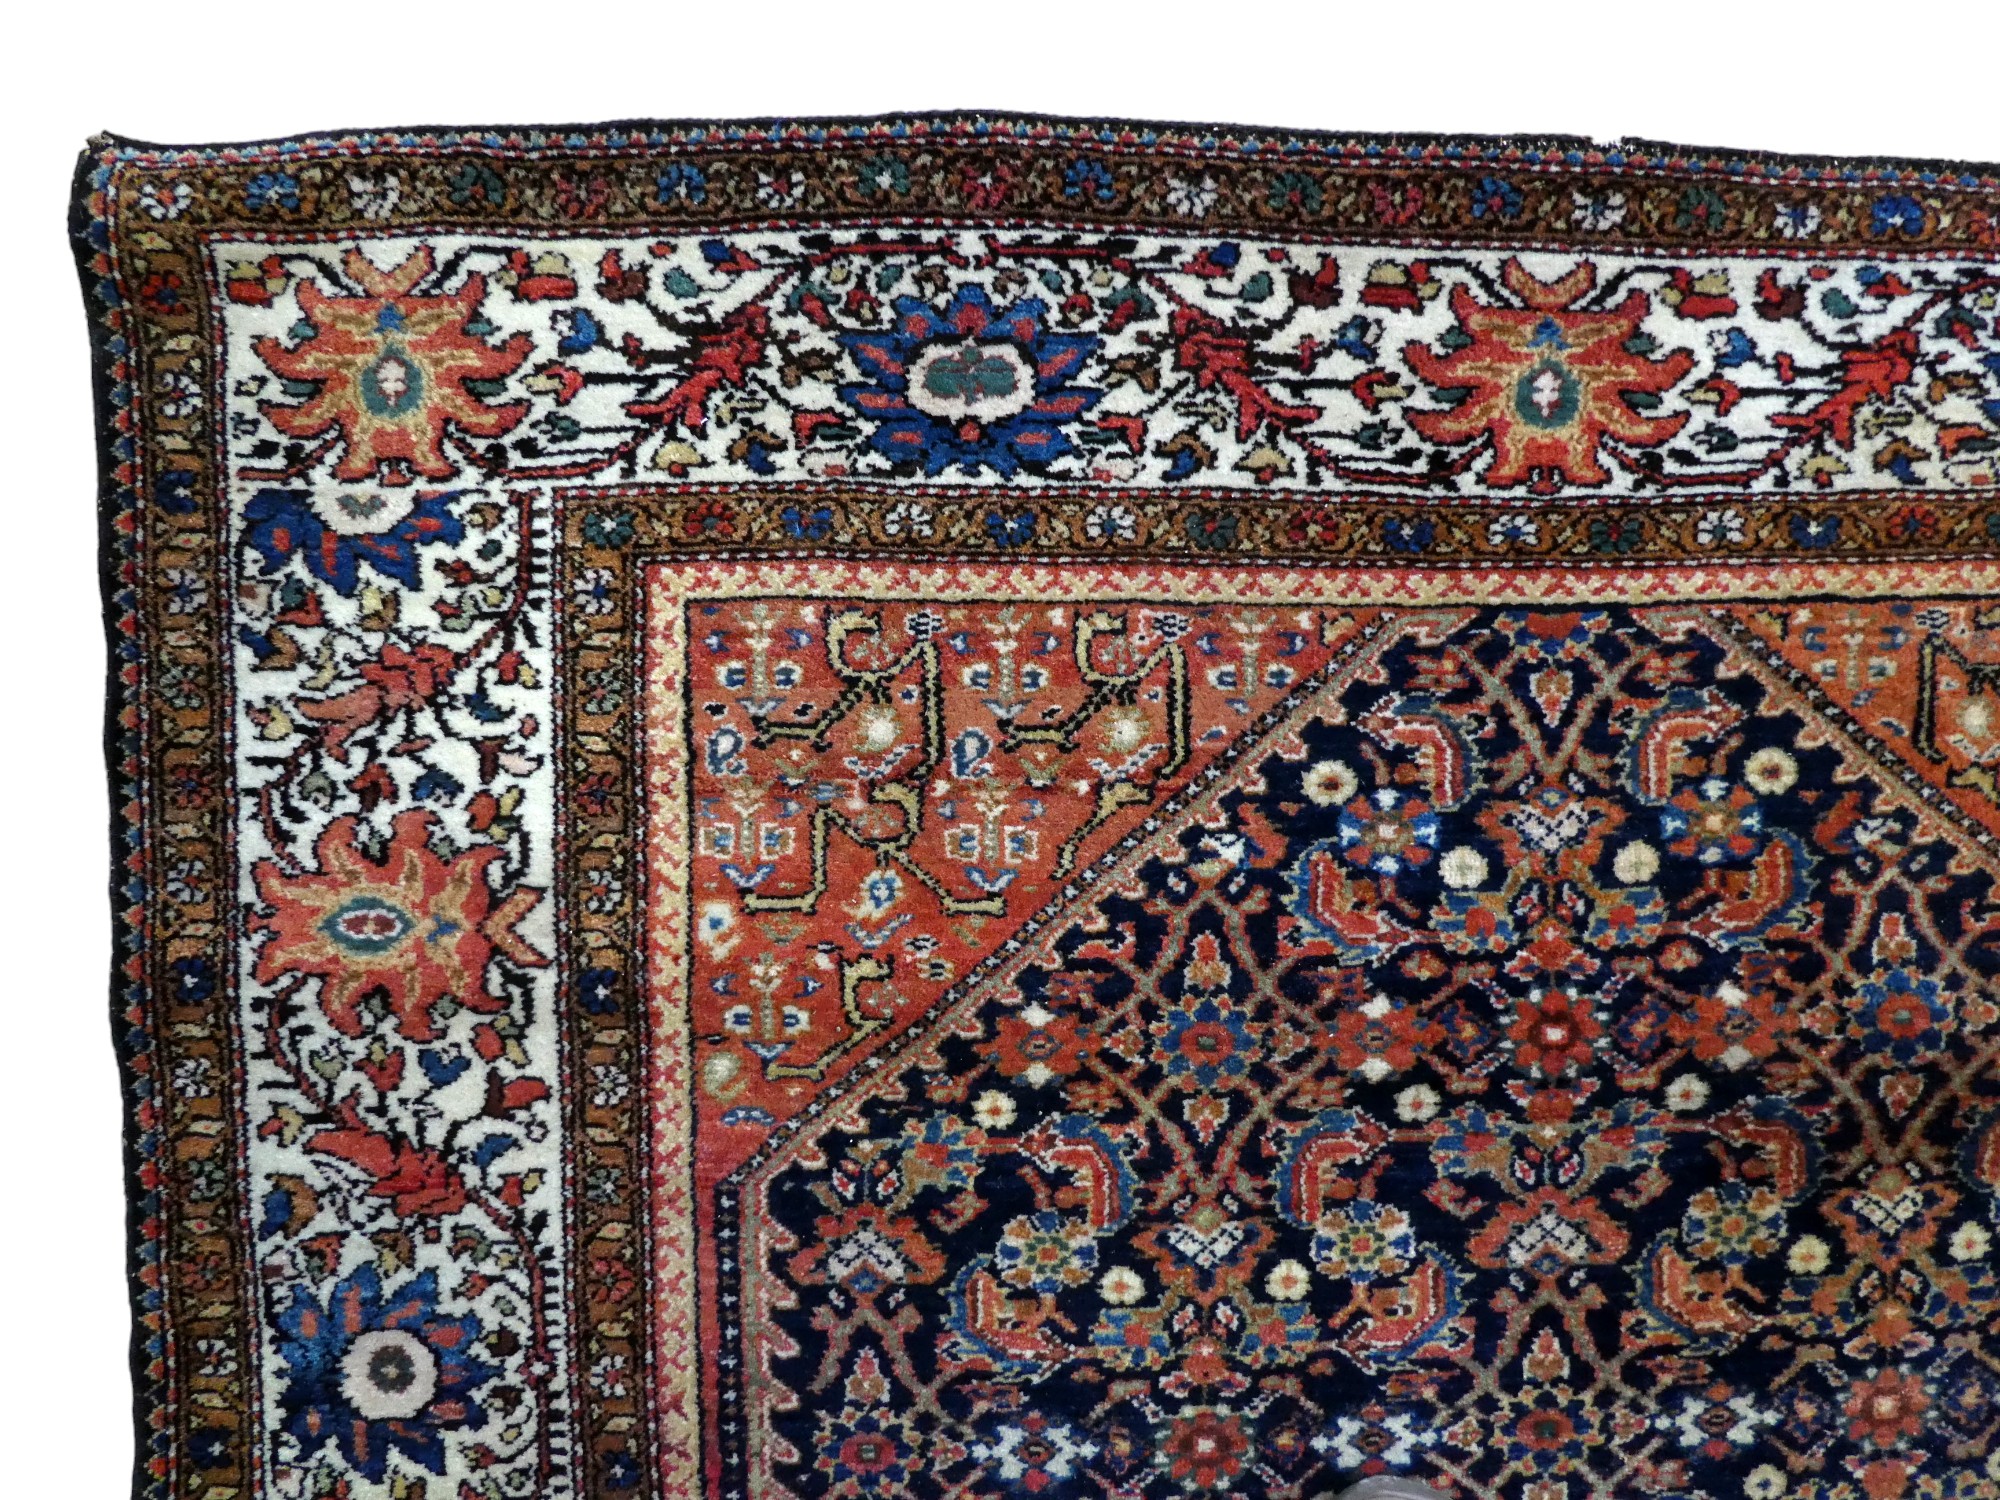 A Senneh design rug - 196 x 135cm - Image 2 of 3